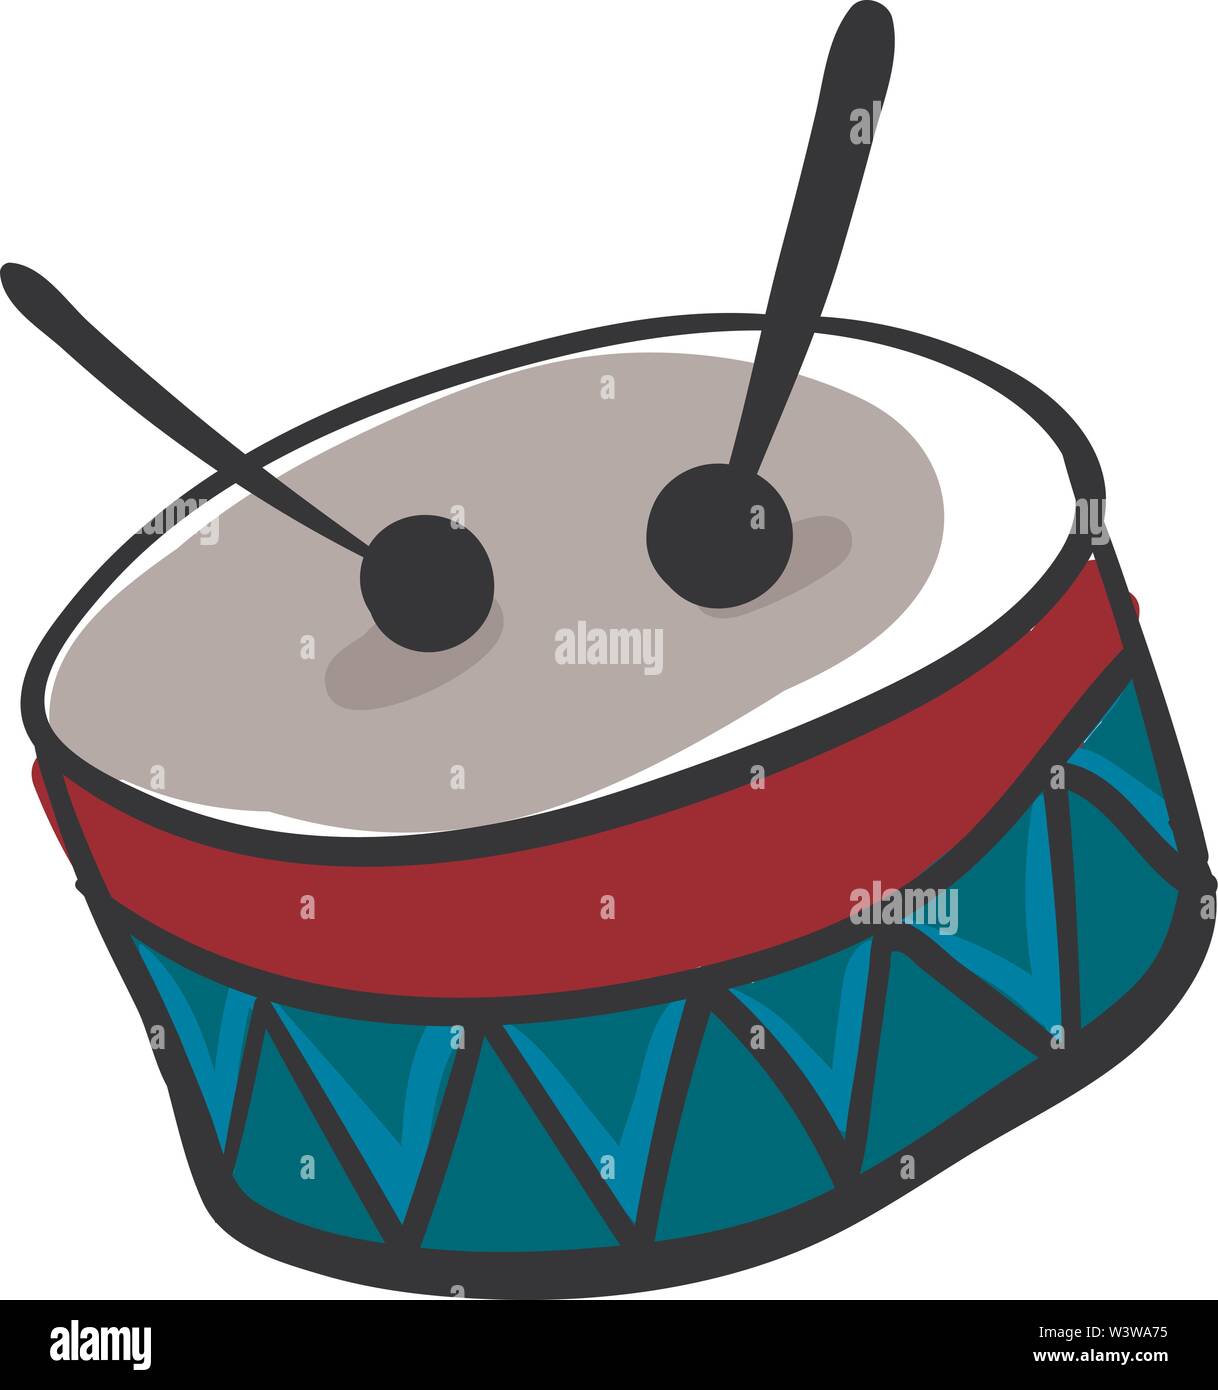 Light blue drum, illustration, vector on white background. Stock Vector